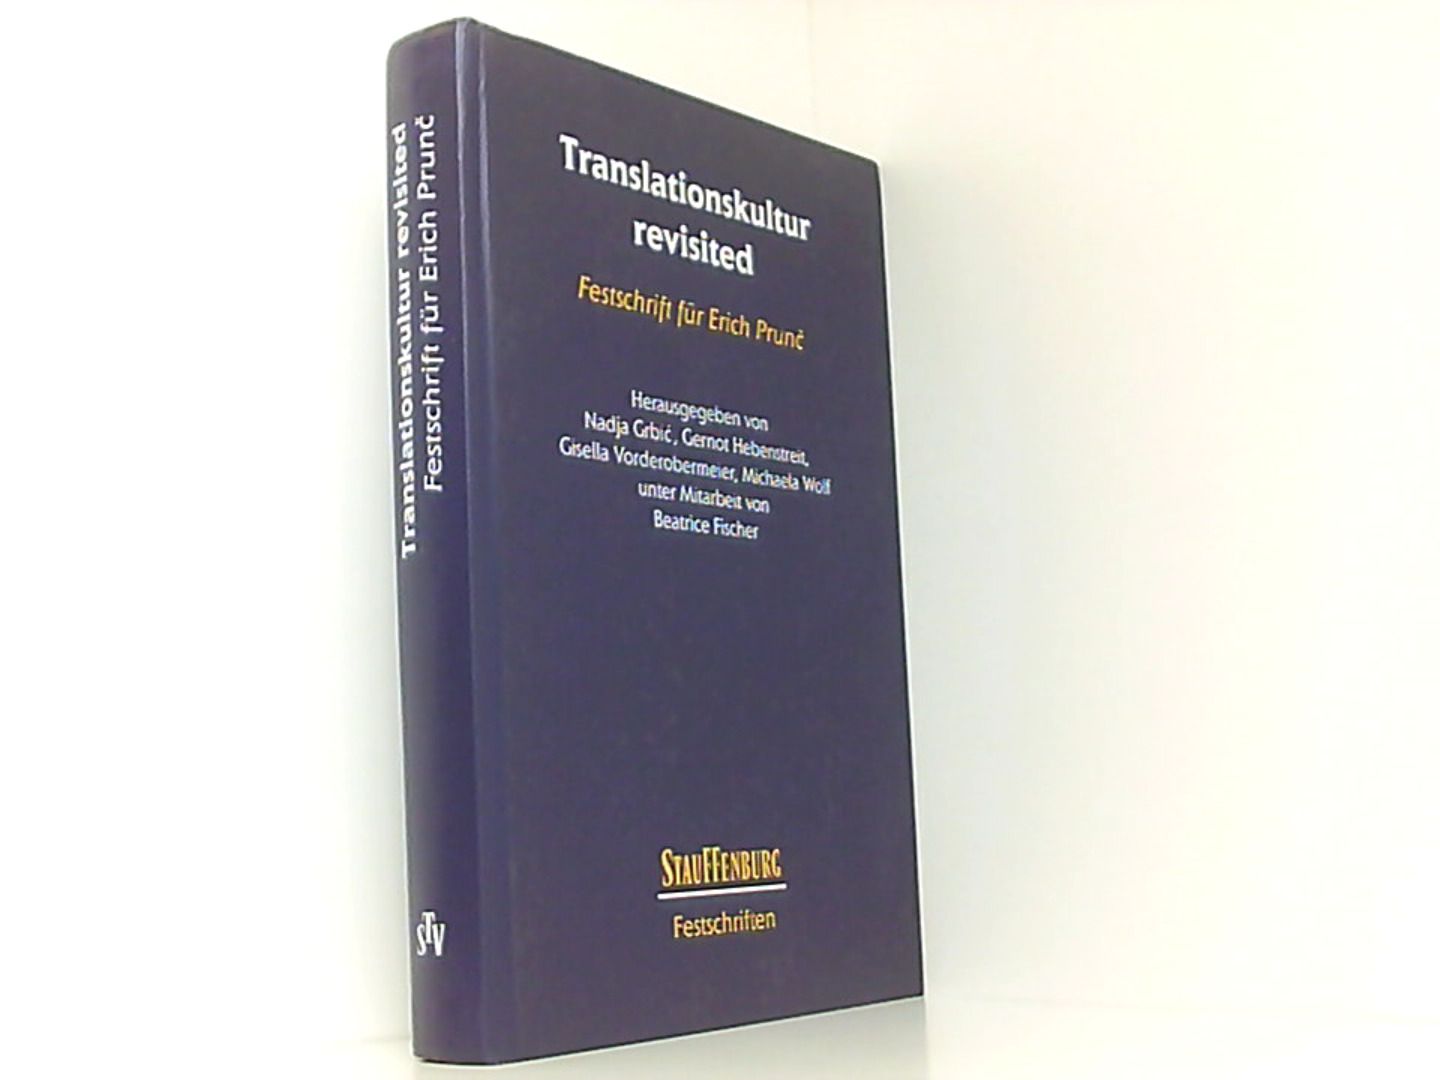 Translationskultur revisited: Festschrift für Erich Prun? (Stauffenburg Festschriften) - Grbic, Nadja, Gernot Hebenstreit Gisella Vorderobermeier  u. a.